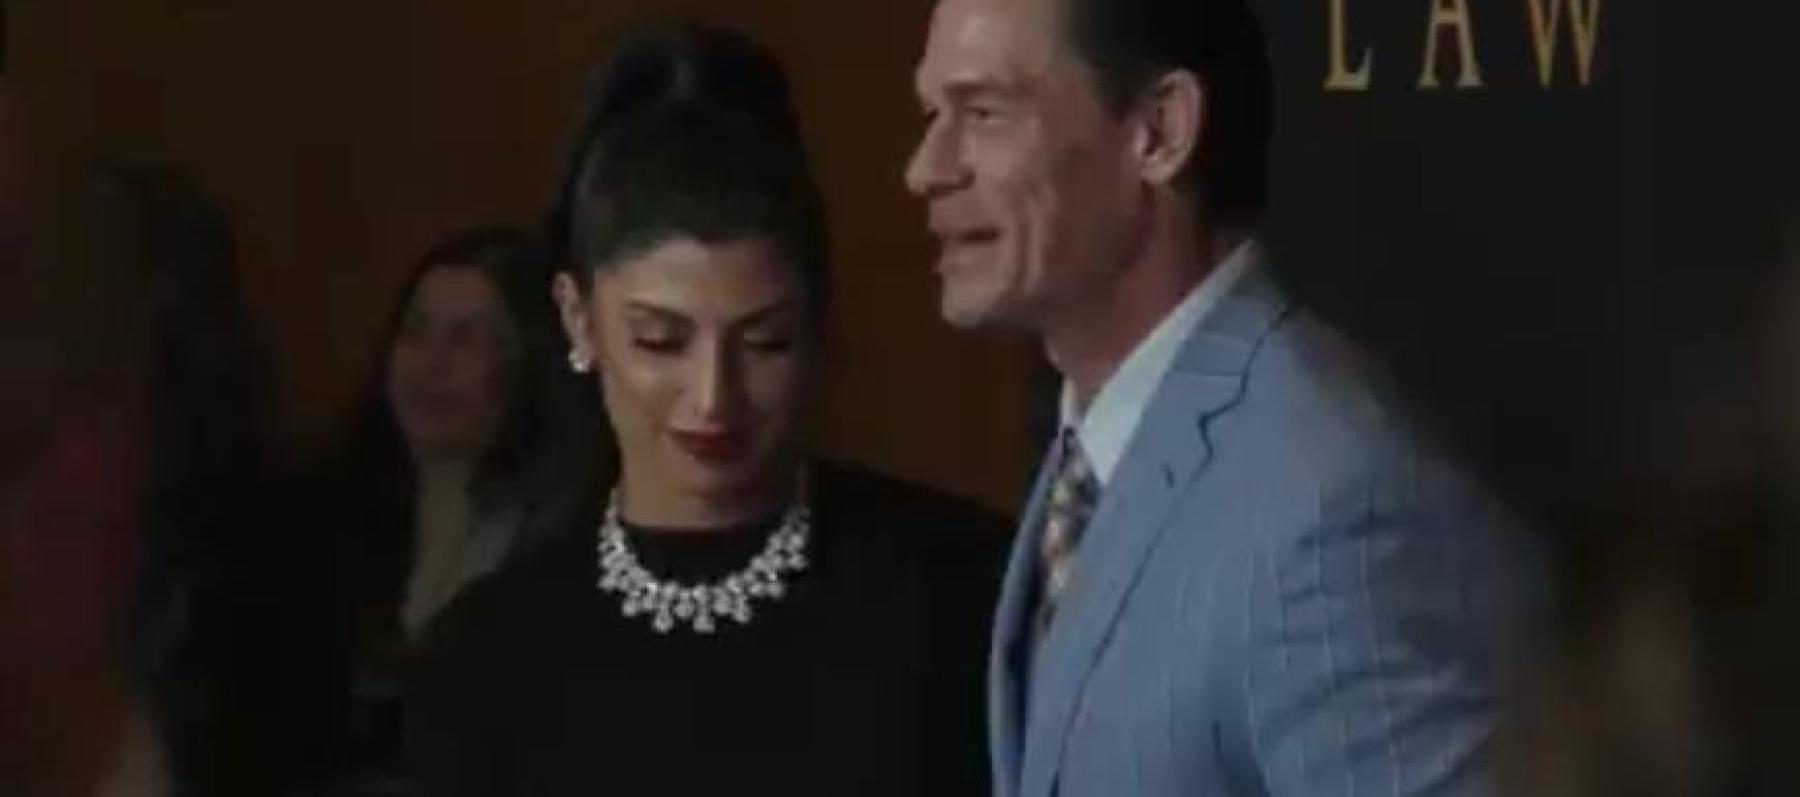 جون سينا و زوجته شاي شارياتزاده  - صورة مأخوذة من فيديو